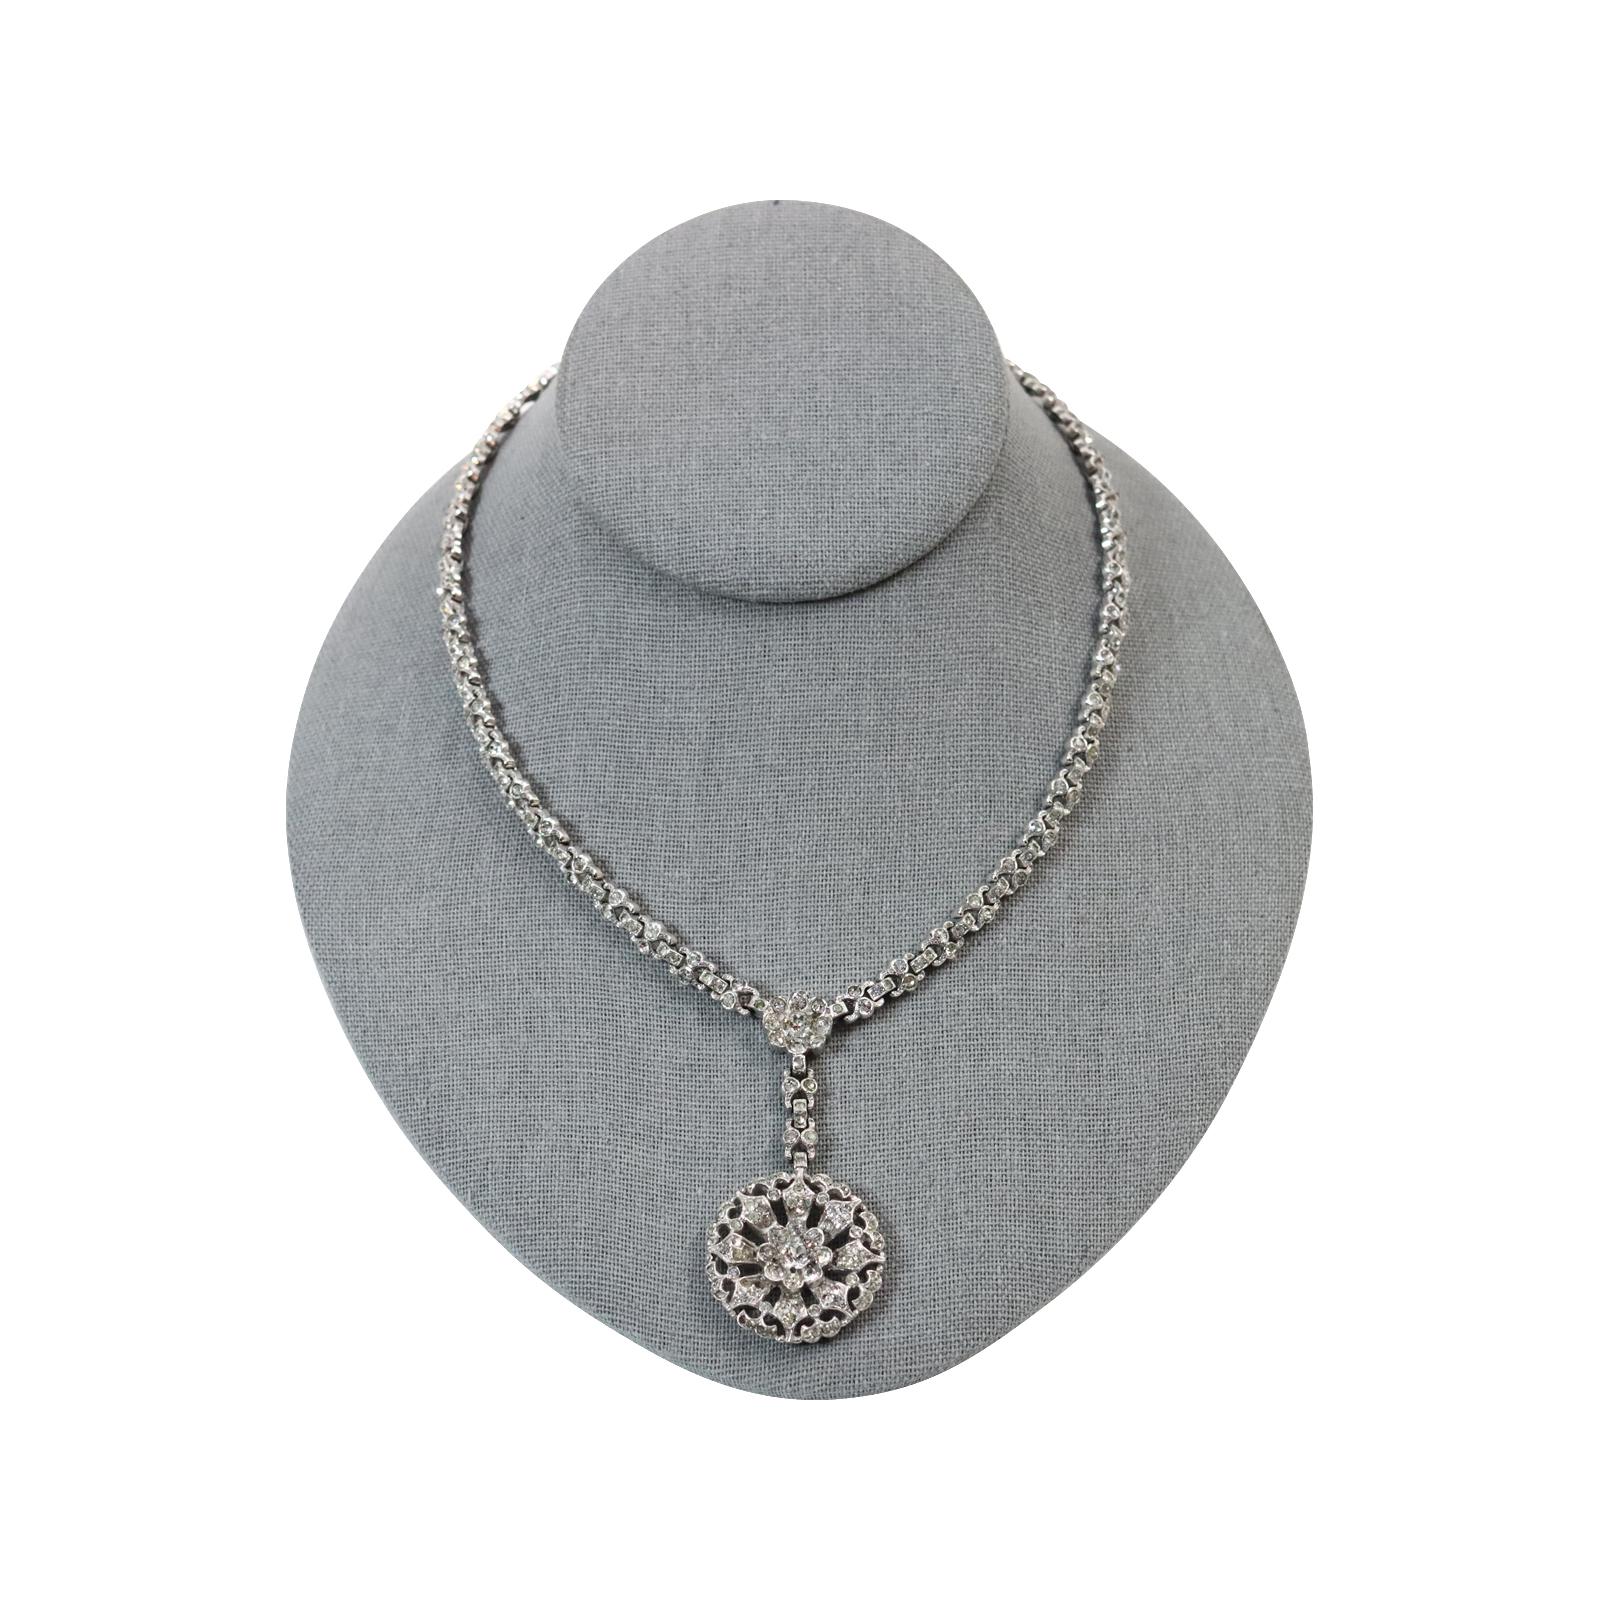 Vintage Alfred Phillipe Trifari  Collier de goutte Circa Circa 1940's. Ce collier est magnifique.  Ils ressemblent à des bijoux fins et sont si bien conservés.  C'est vraiment magique. De petites pièces rondes et pavées forment un motif autour du